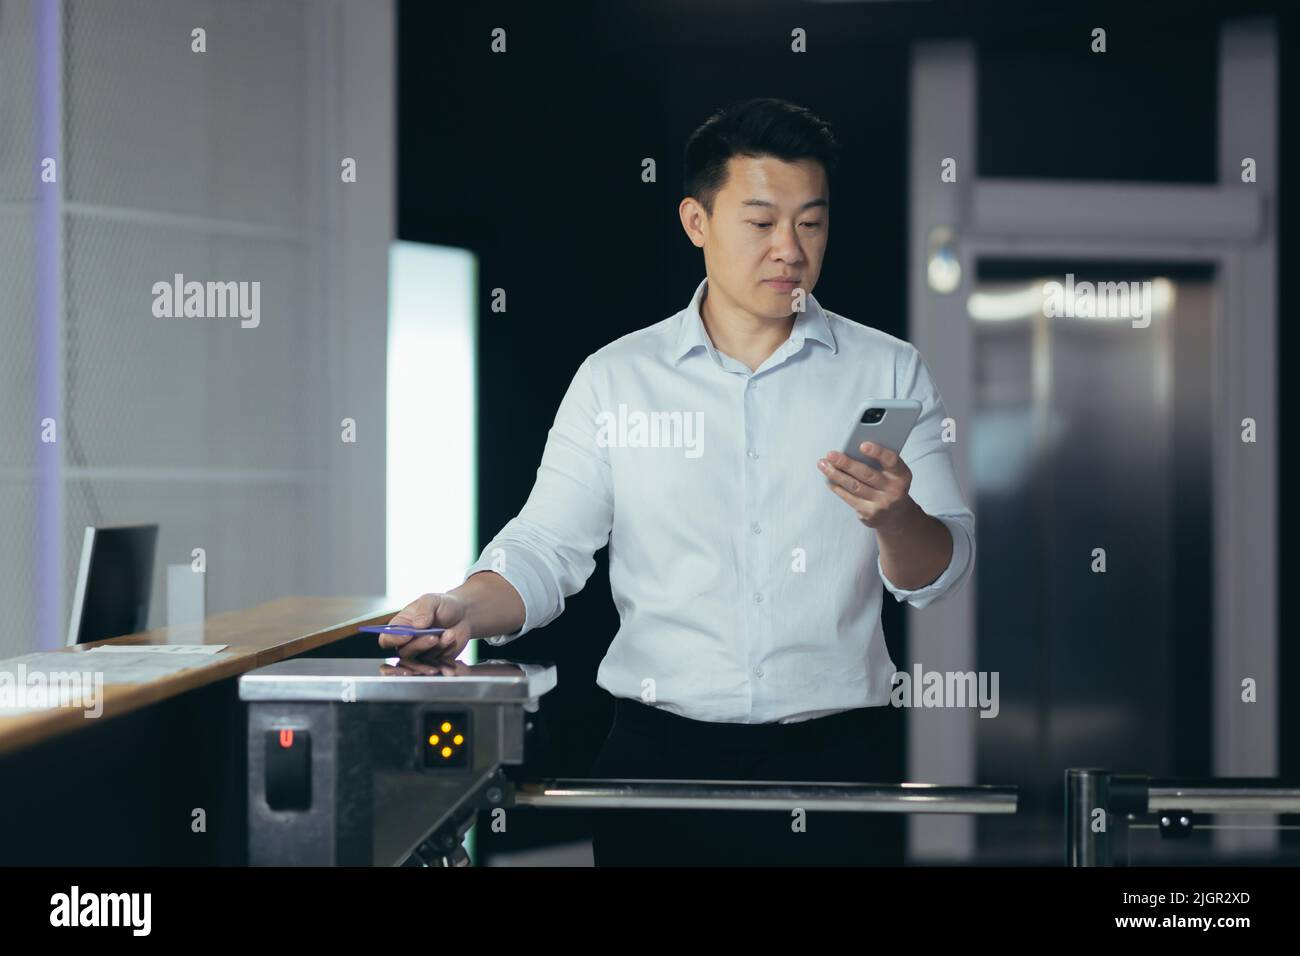 Un homme d'affaires asiatique prospère entre au bureau, utilise la carte-clé pour ouvrir le tourniquet, l'homme regarde l'écran du téléphone lit les nouvelles Banque D'Images